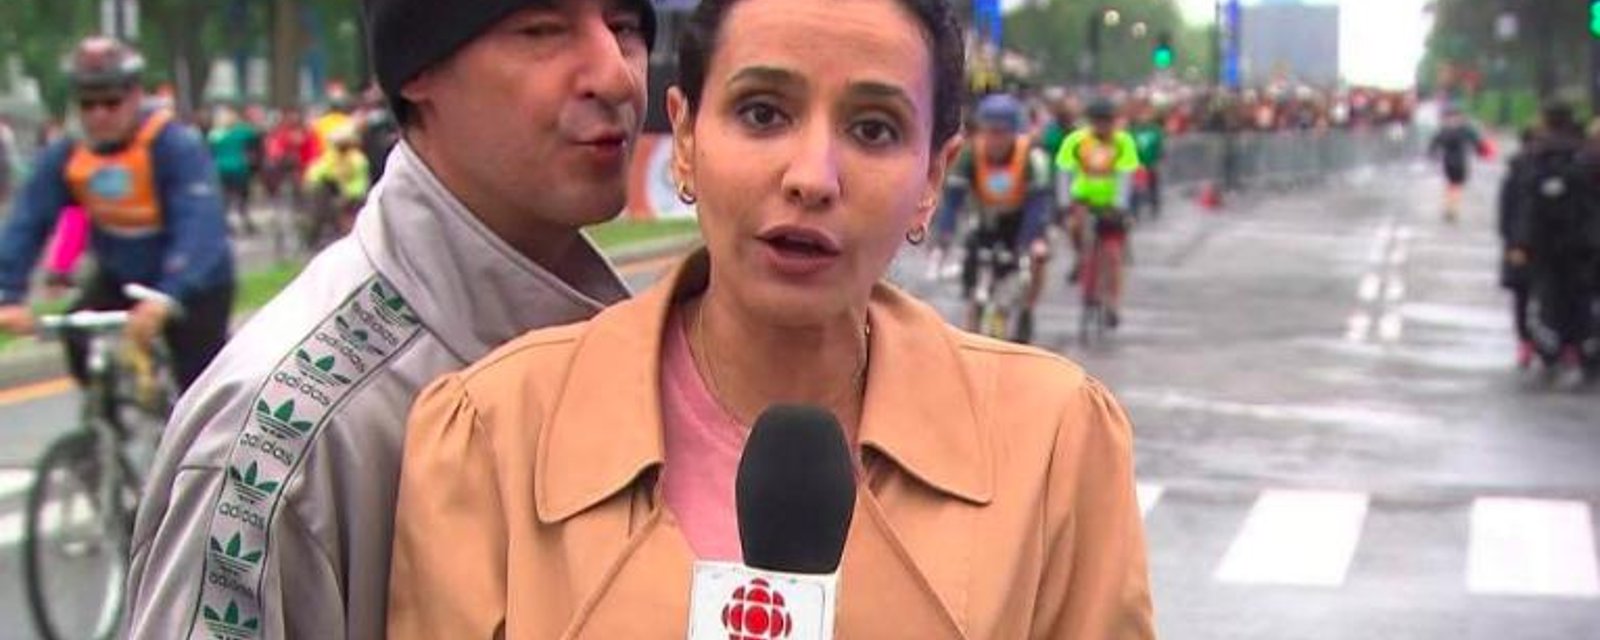 Une journaliste de Radio-Canada agressée pendant qu'elle était en direct à la télé